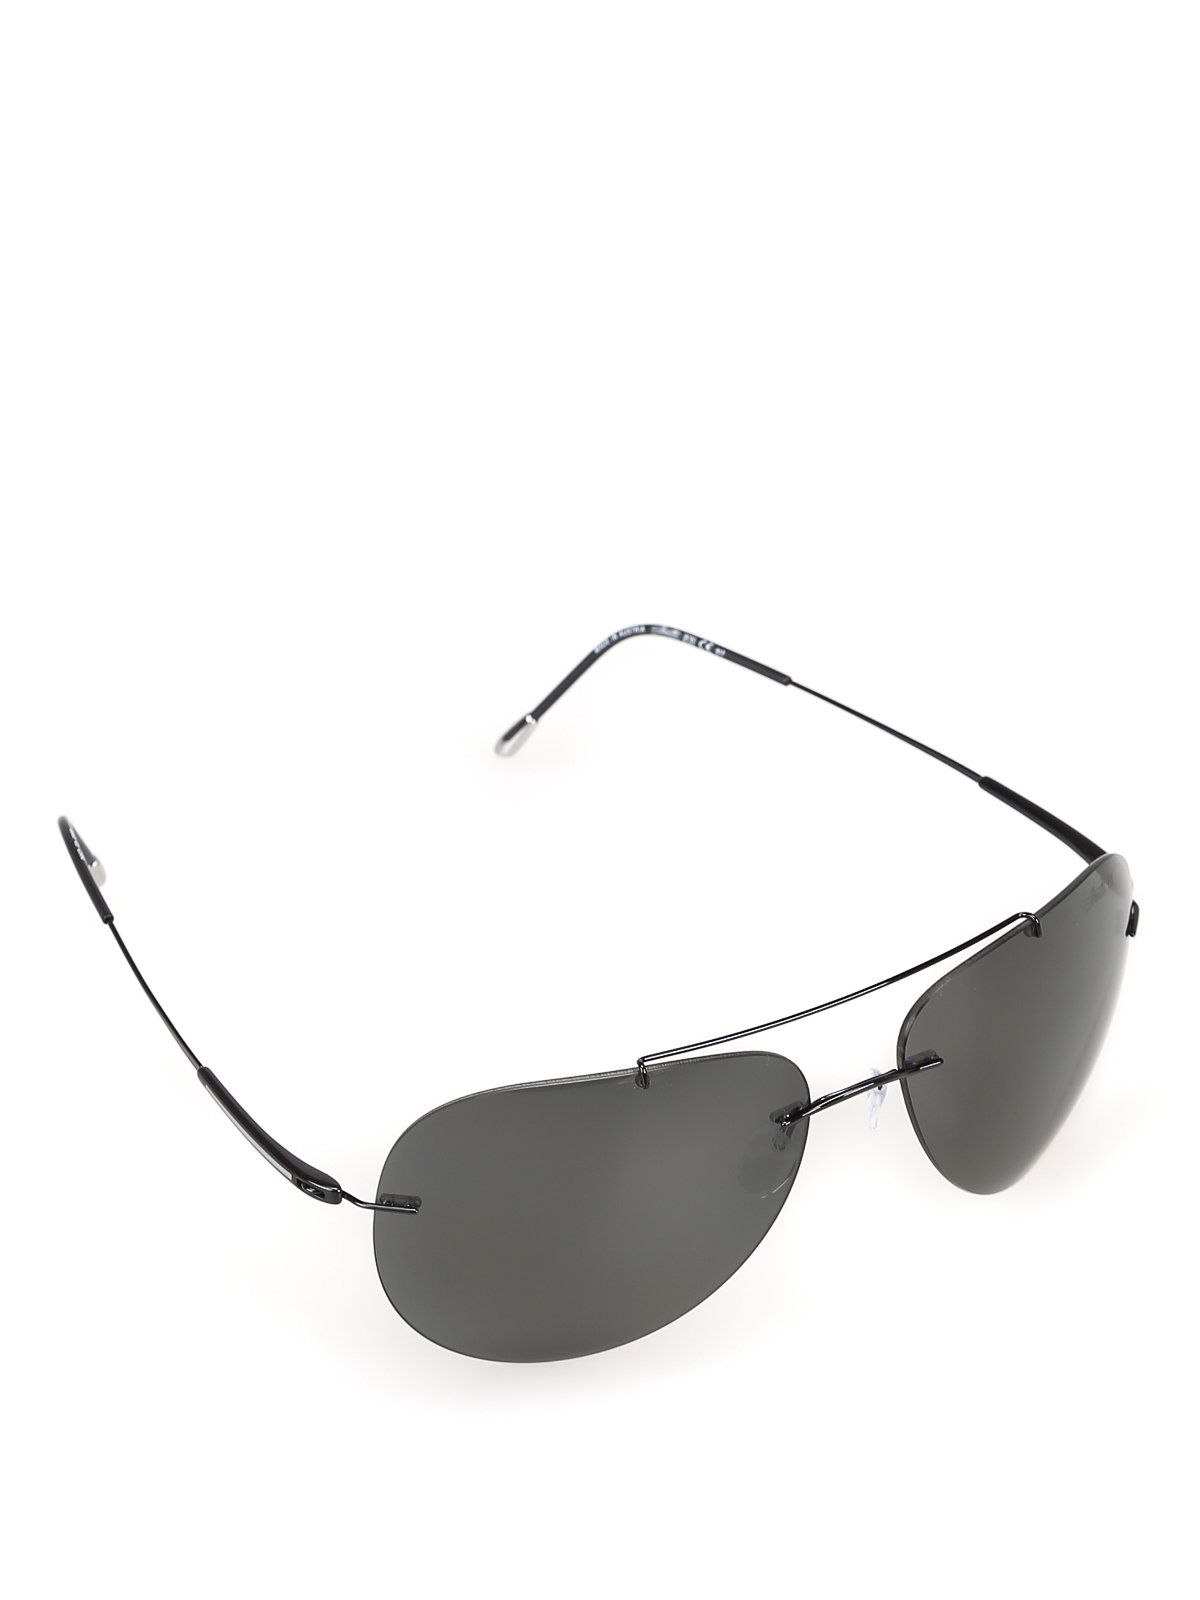 Sunglasses Silhouette - Black titanium -